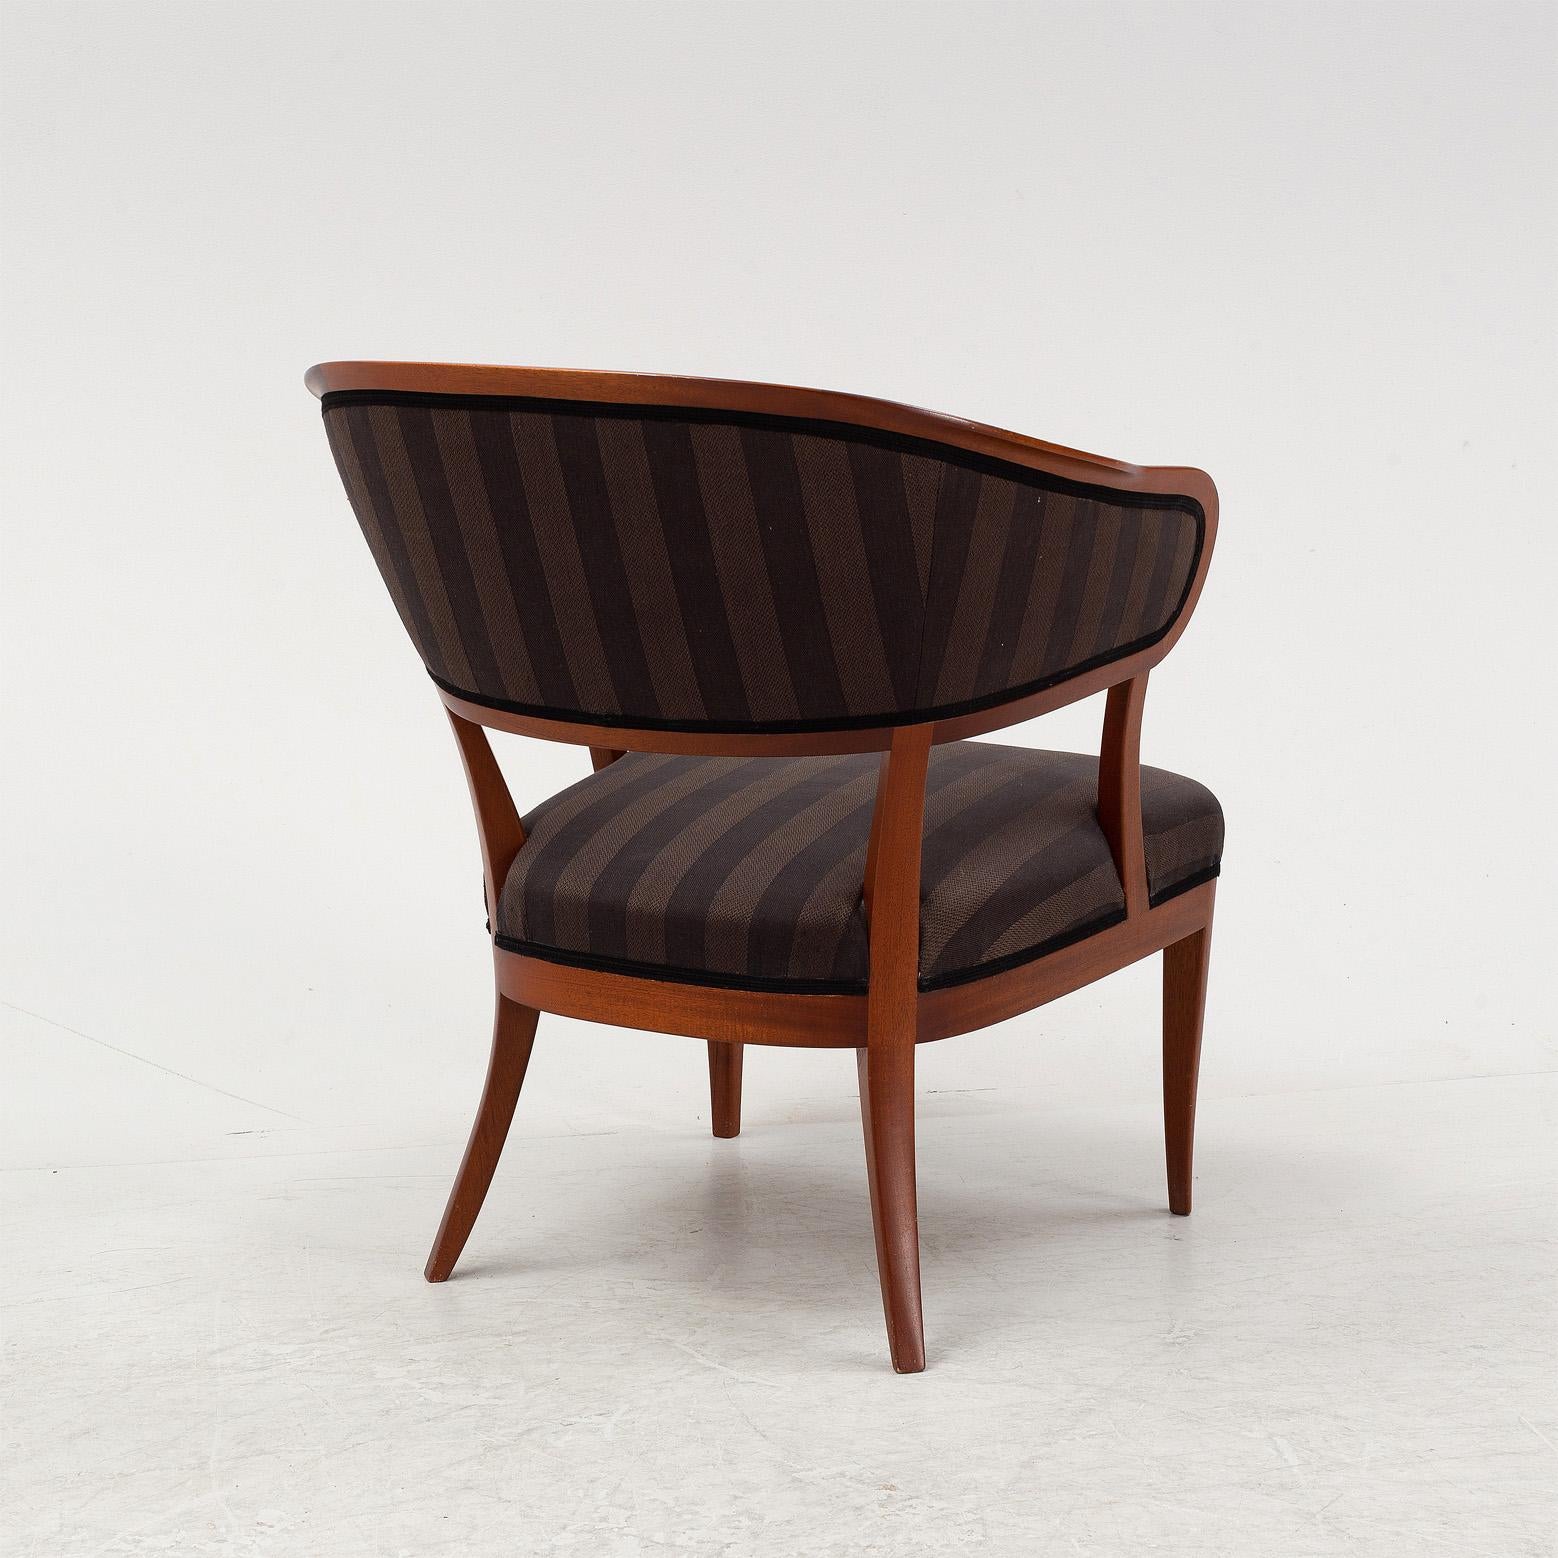 Carl Malmsten est l'un des designers de meubles les plus célèbres de Suède. Nombre de ses meubles sont considérés comme des classiques du design moderne, par exemple, la chaise cannée 